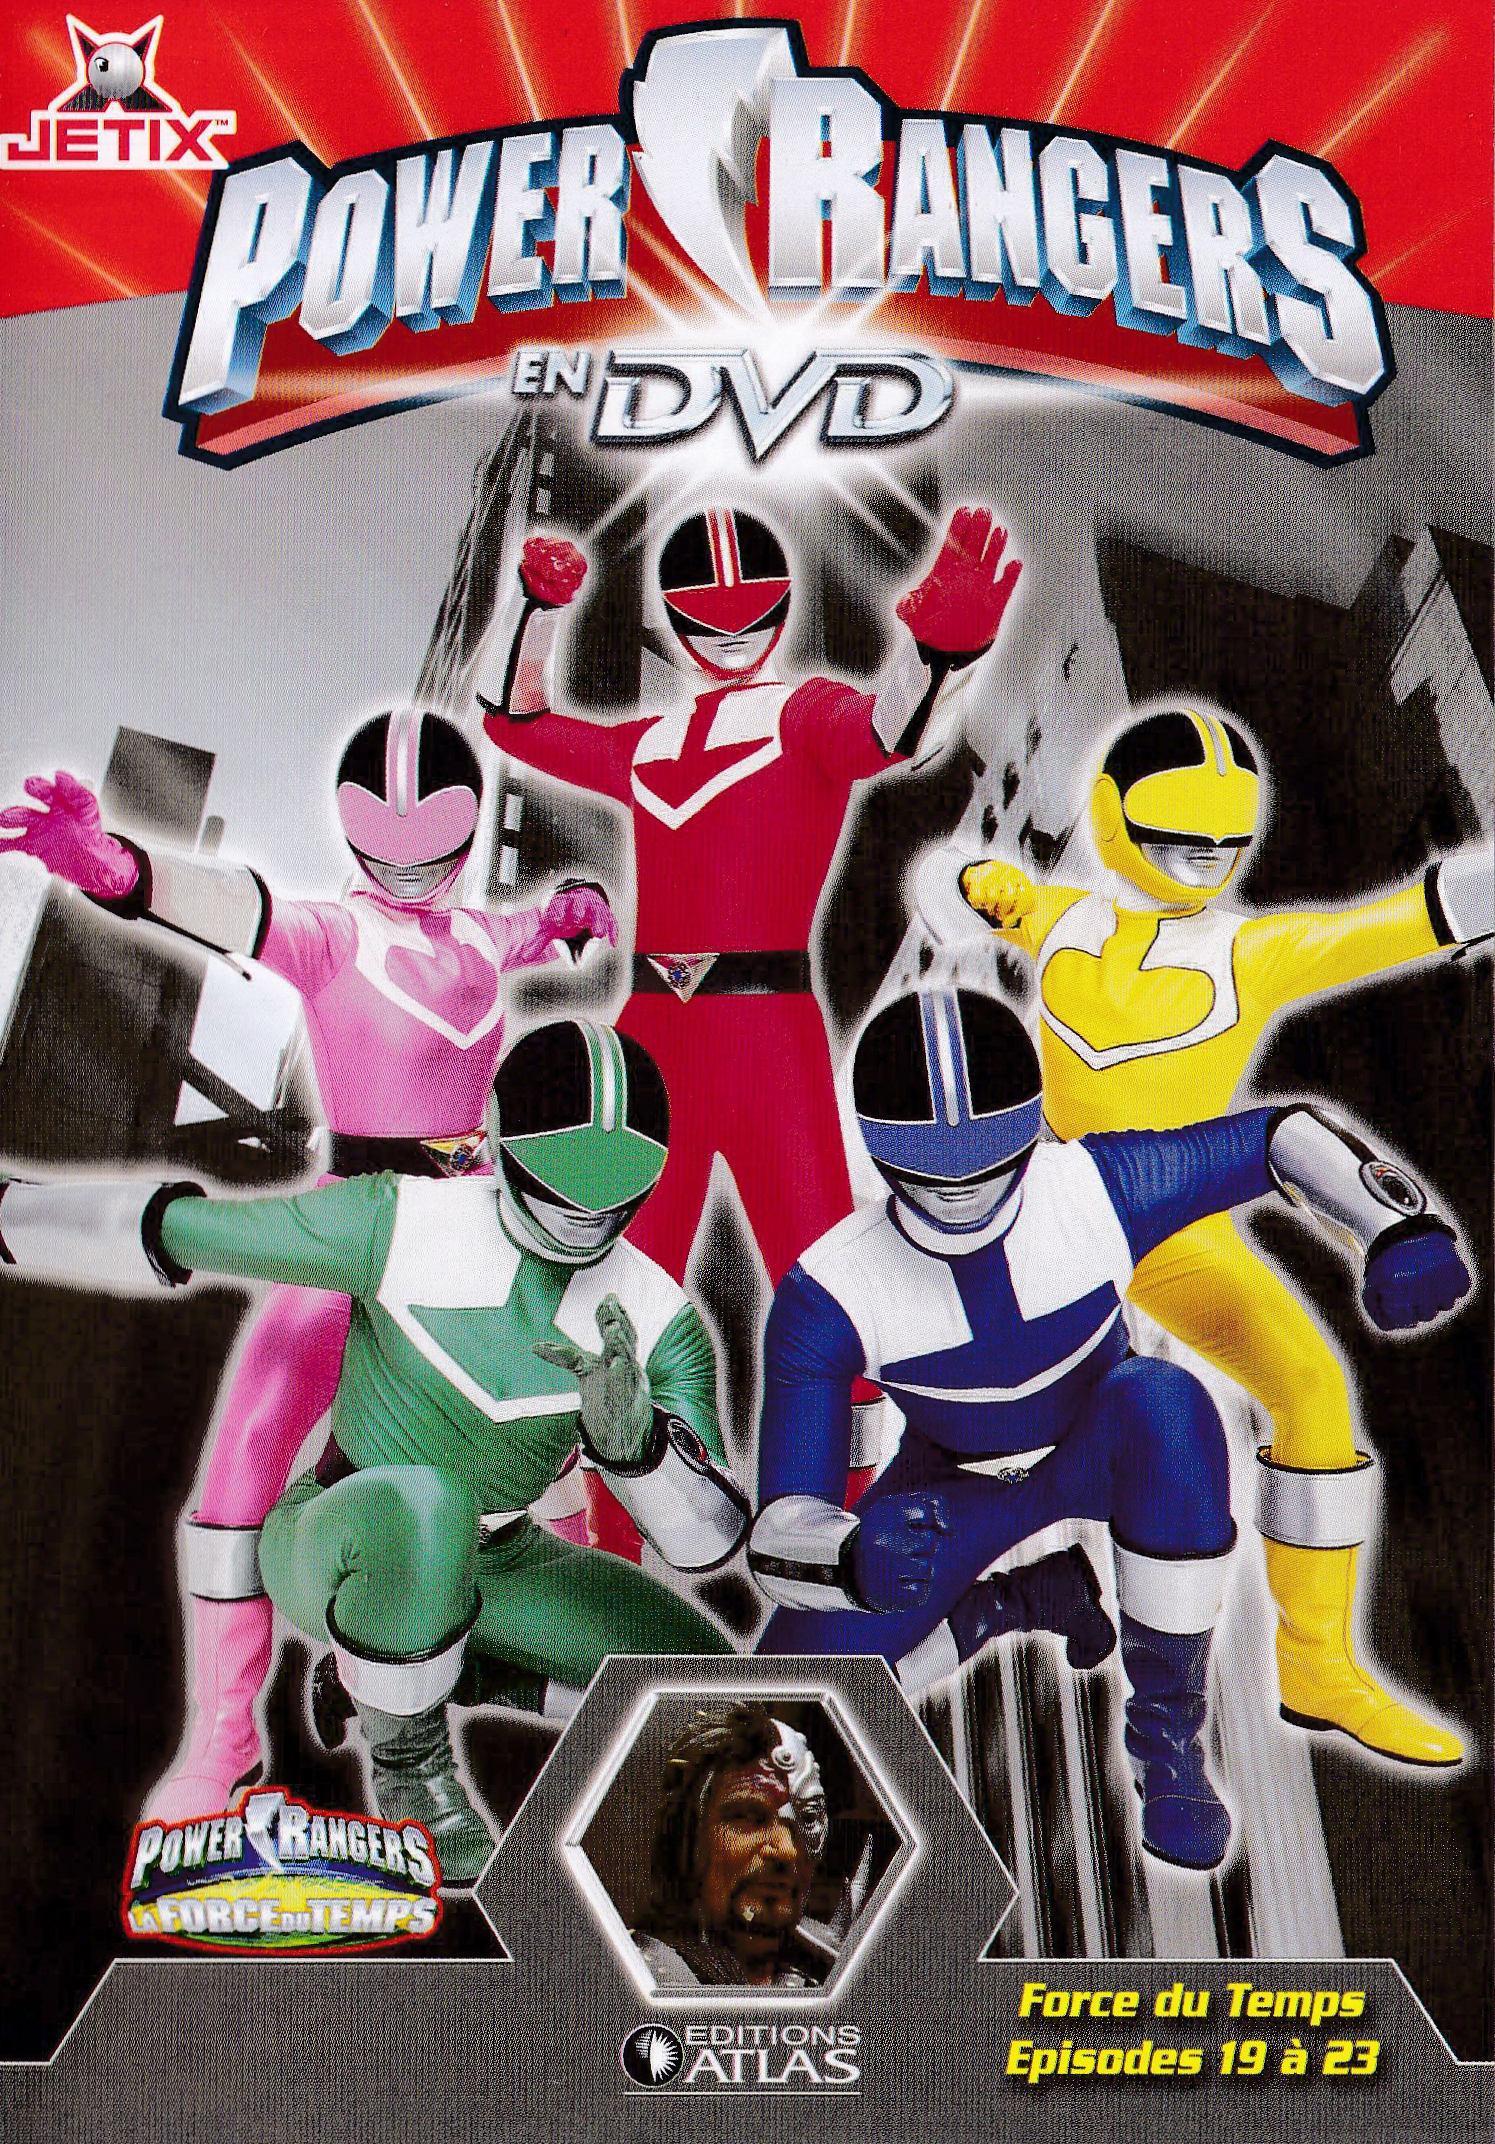 Power Rangers en DVD n°47